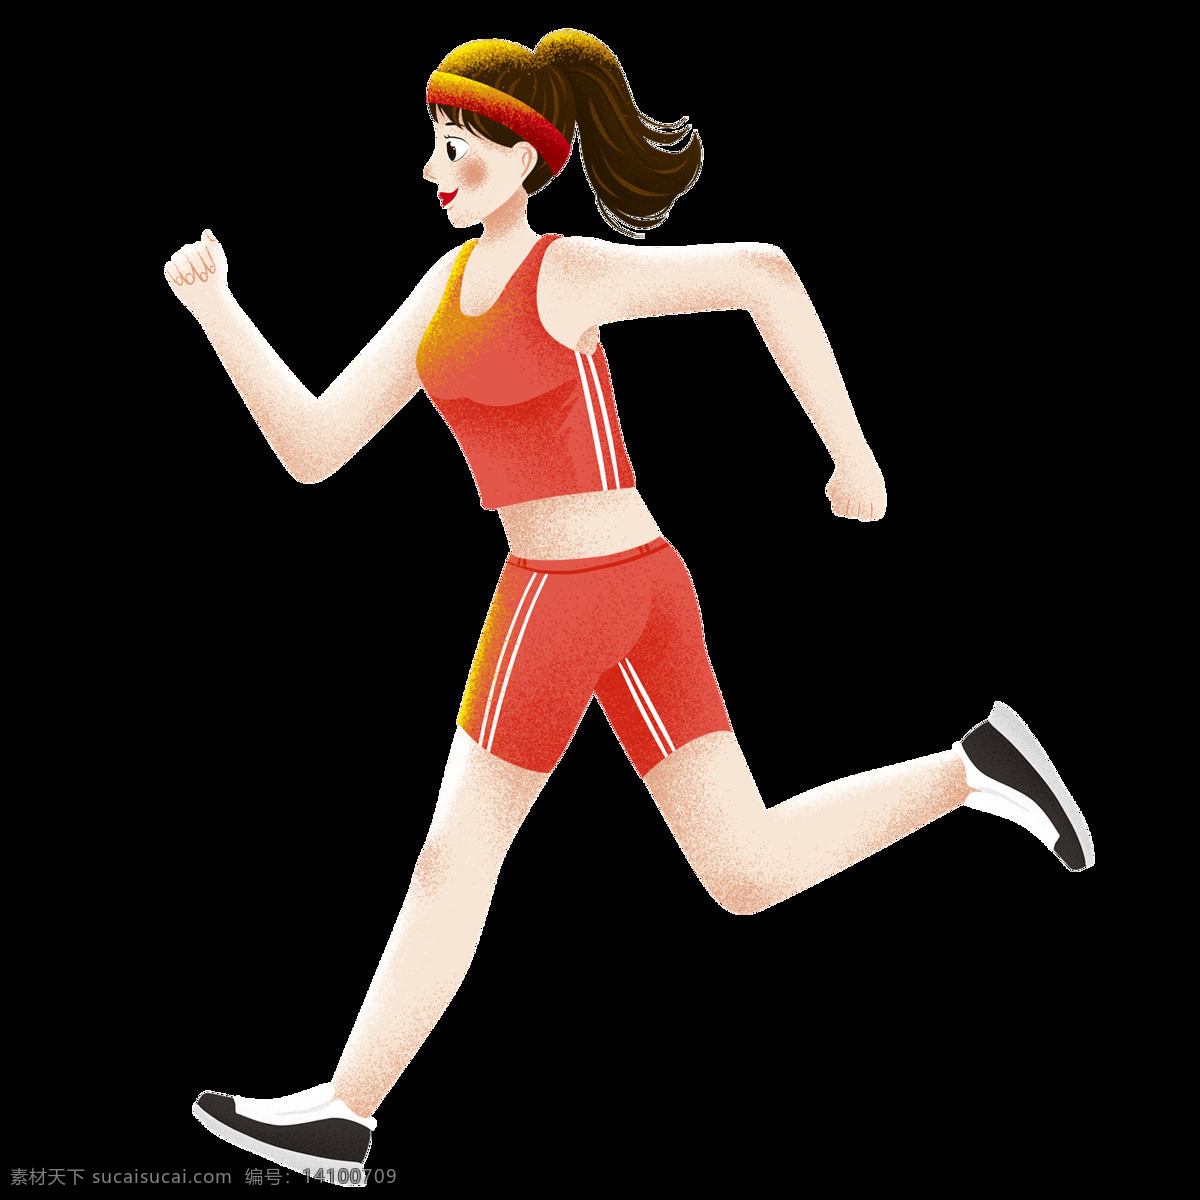 跑步女孩 跑步 女孩 健身 热身 运动